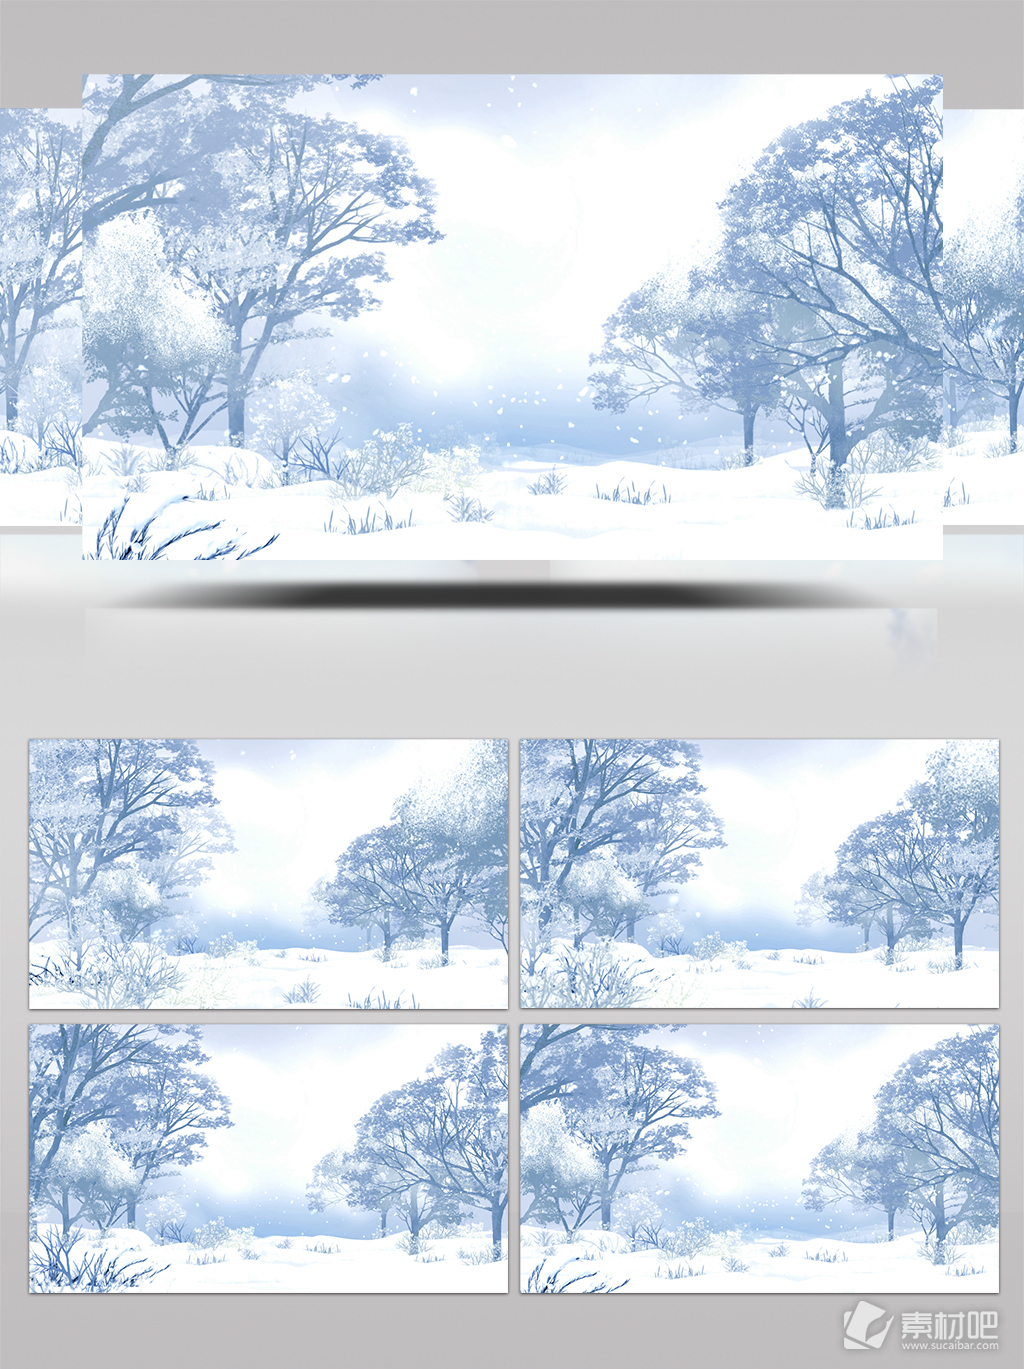 下雪背景主题视频素材 唯美风景唯美下雪雪树年会背景雪的主题下载 素材吧